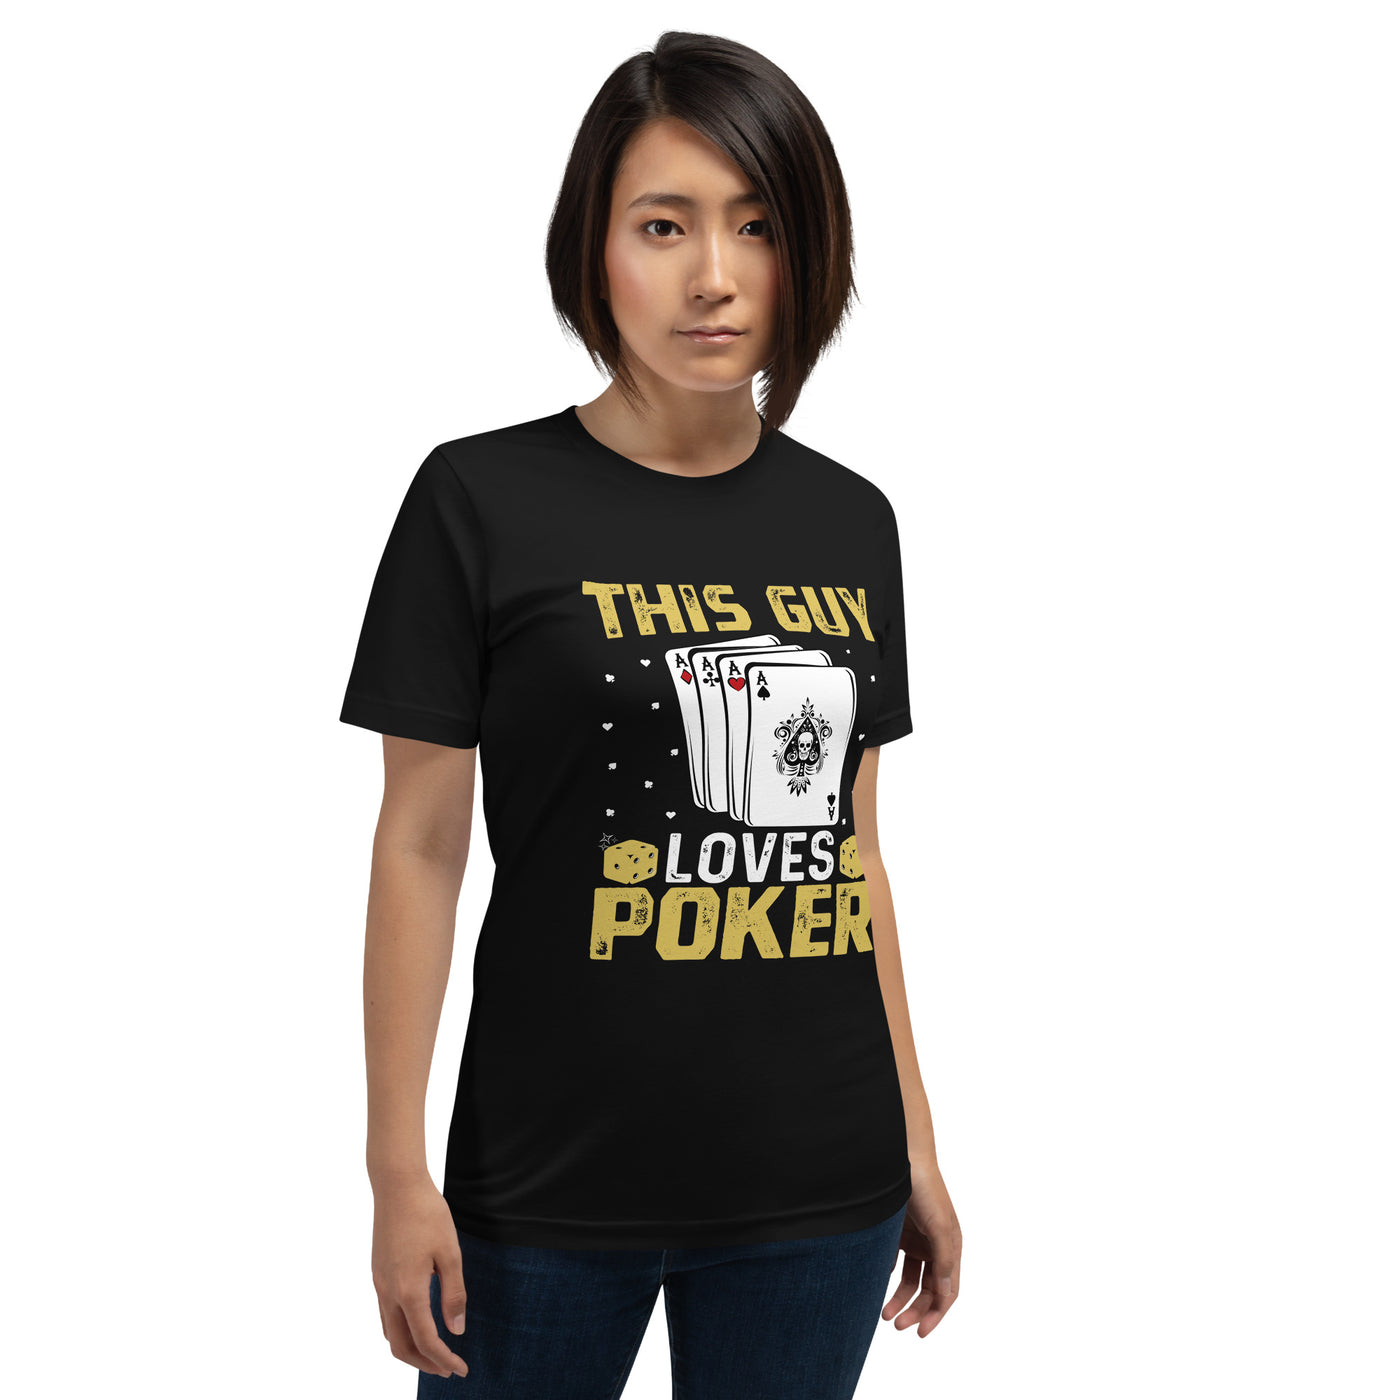 This Guy Loves Poker - Unisex t-shirt